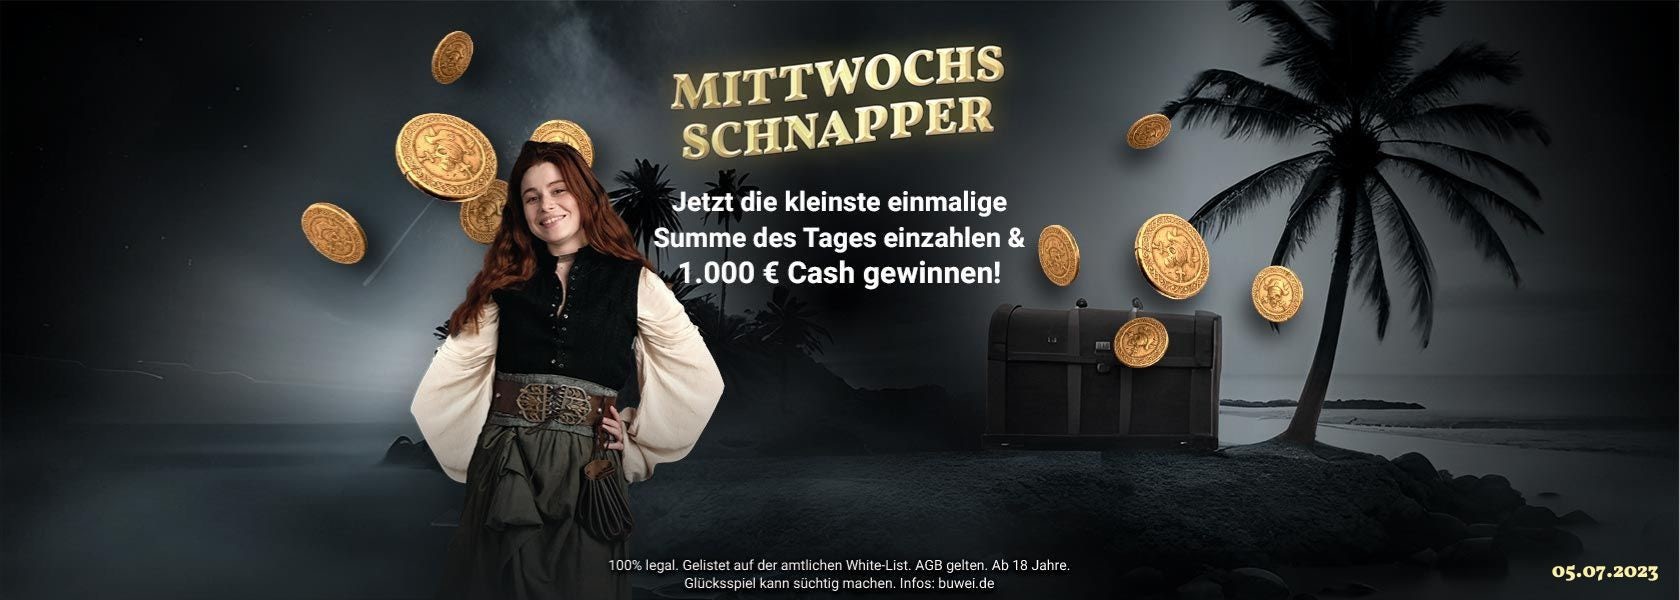 JackpotPiraten-Mittwochs-Schnapper-05072023